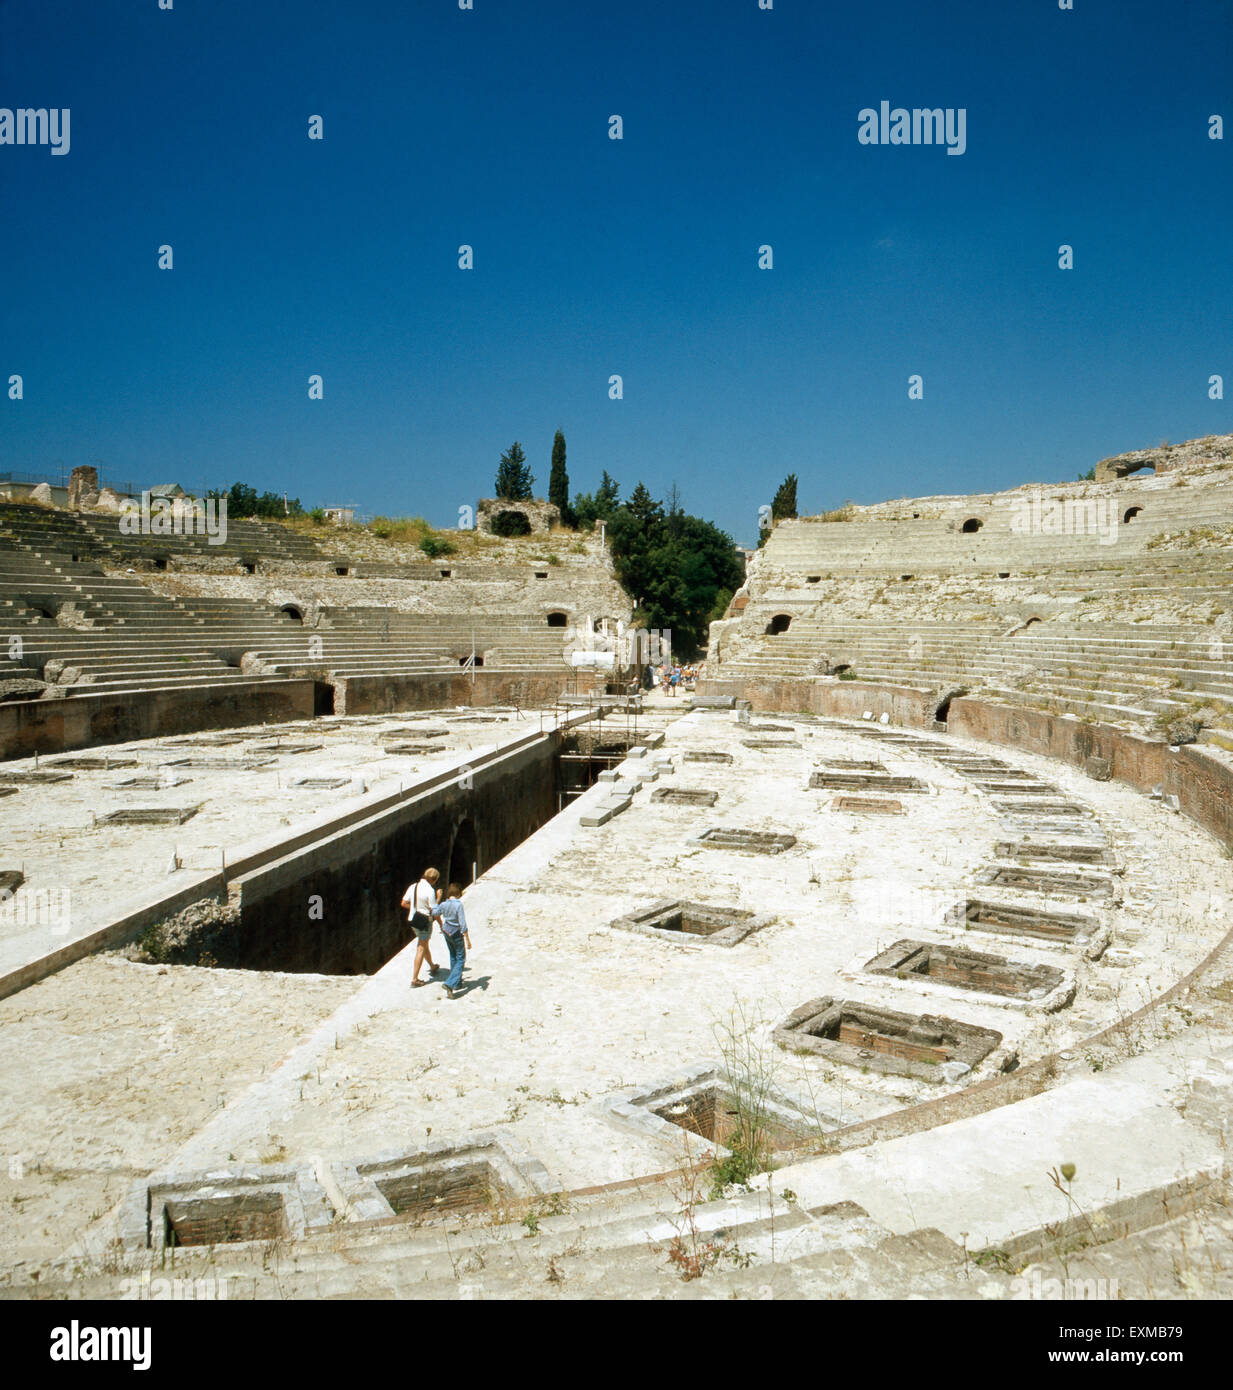 Das flavische anfiteatro von Pozzuoli, Kampanien, Italien 1970er Jahre. L anfiteatro Flavio di Pozzuoli, Campania, Italia degli anni settanta. Foto Stock